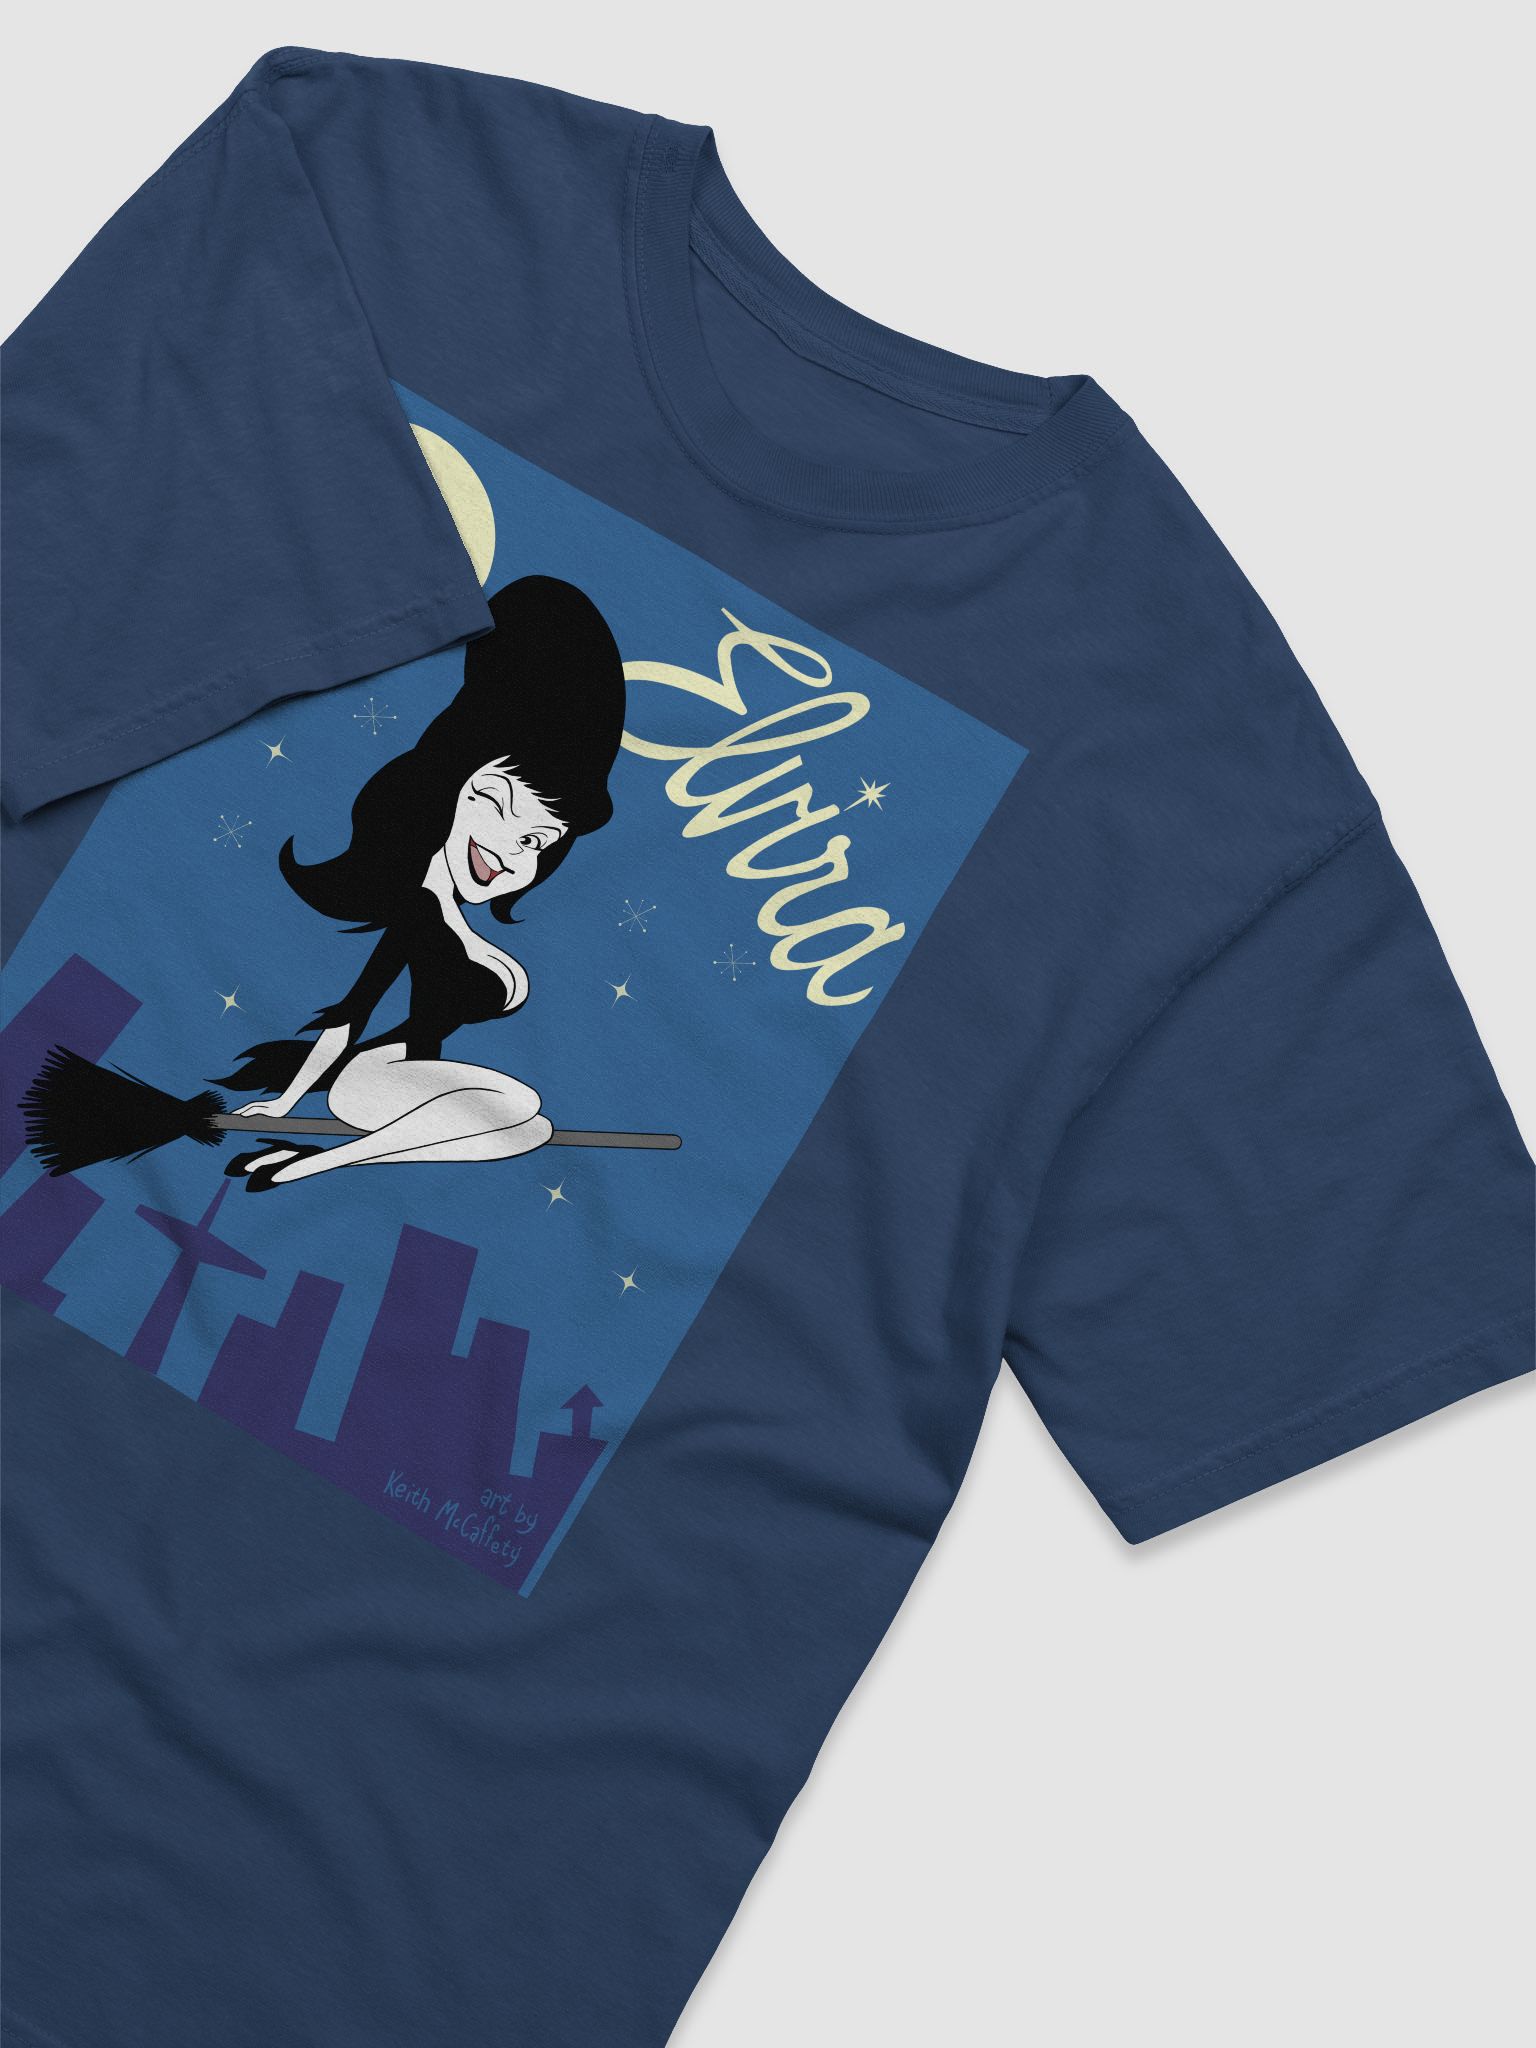 Elvira/Bewitched T-shirt